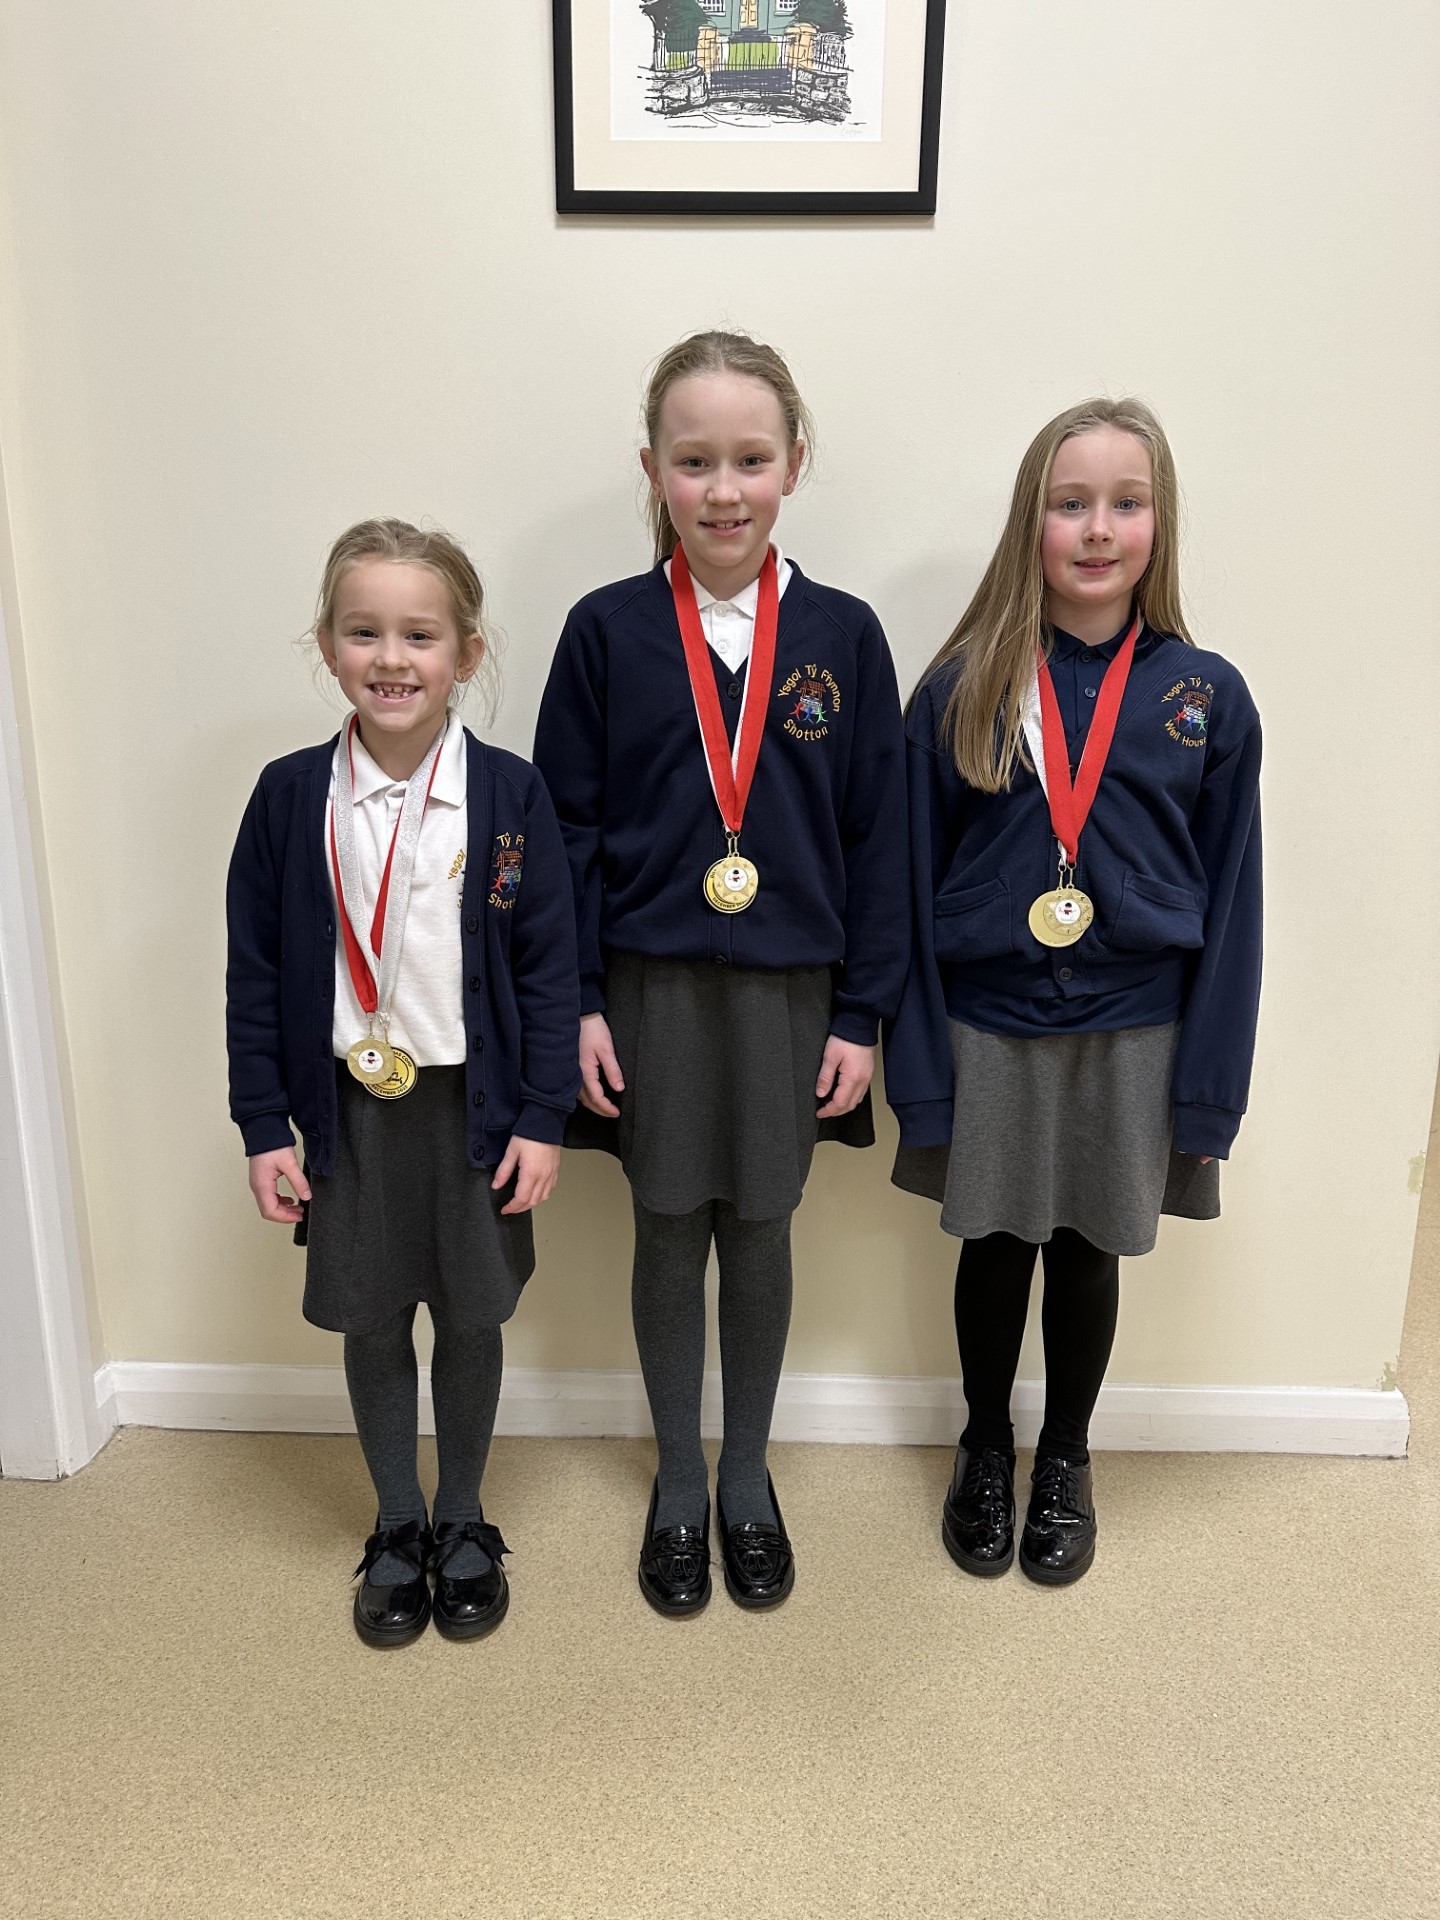 The gymnastics winners from Ysgol Ty Ffynnon - Freya, Emliee and Fleur .